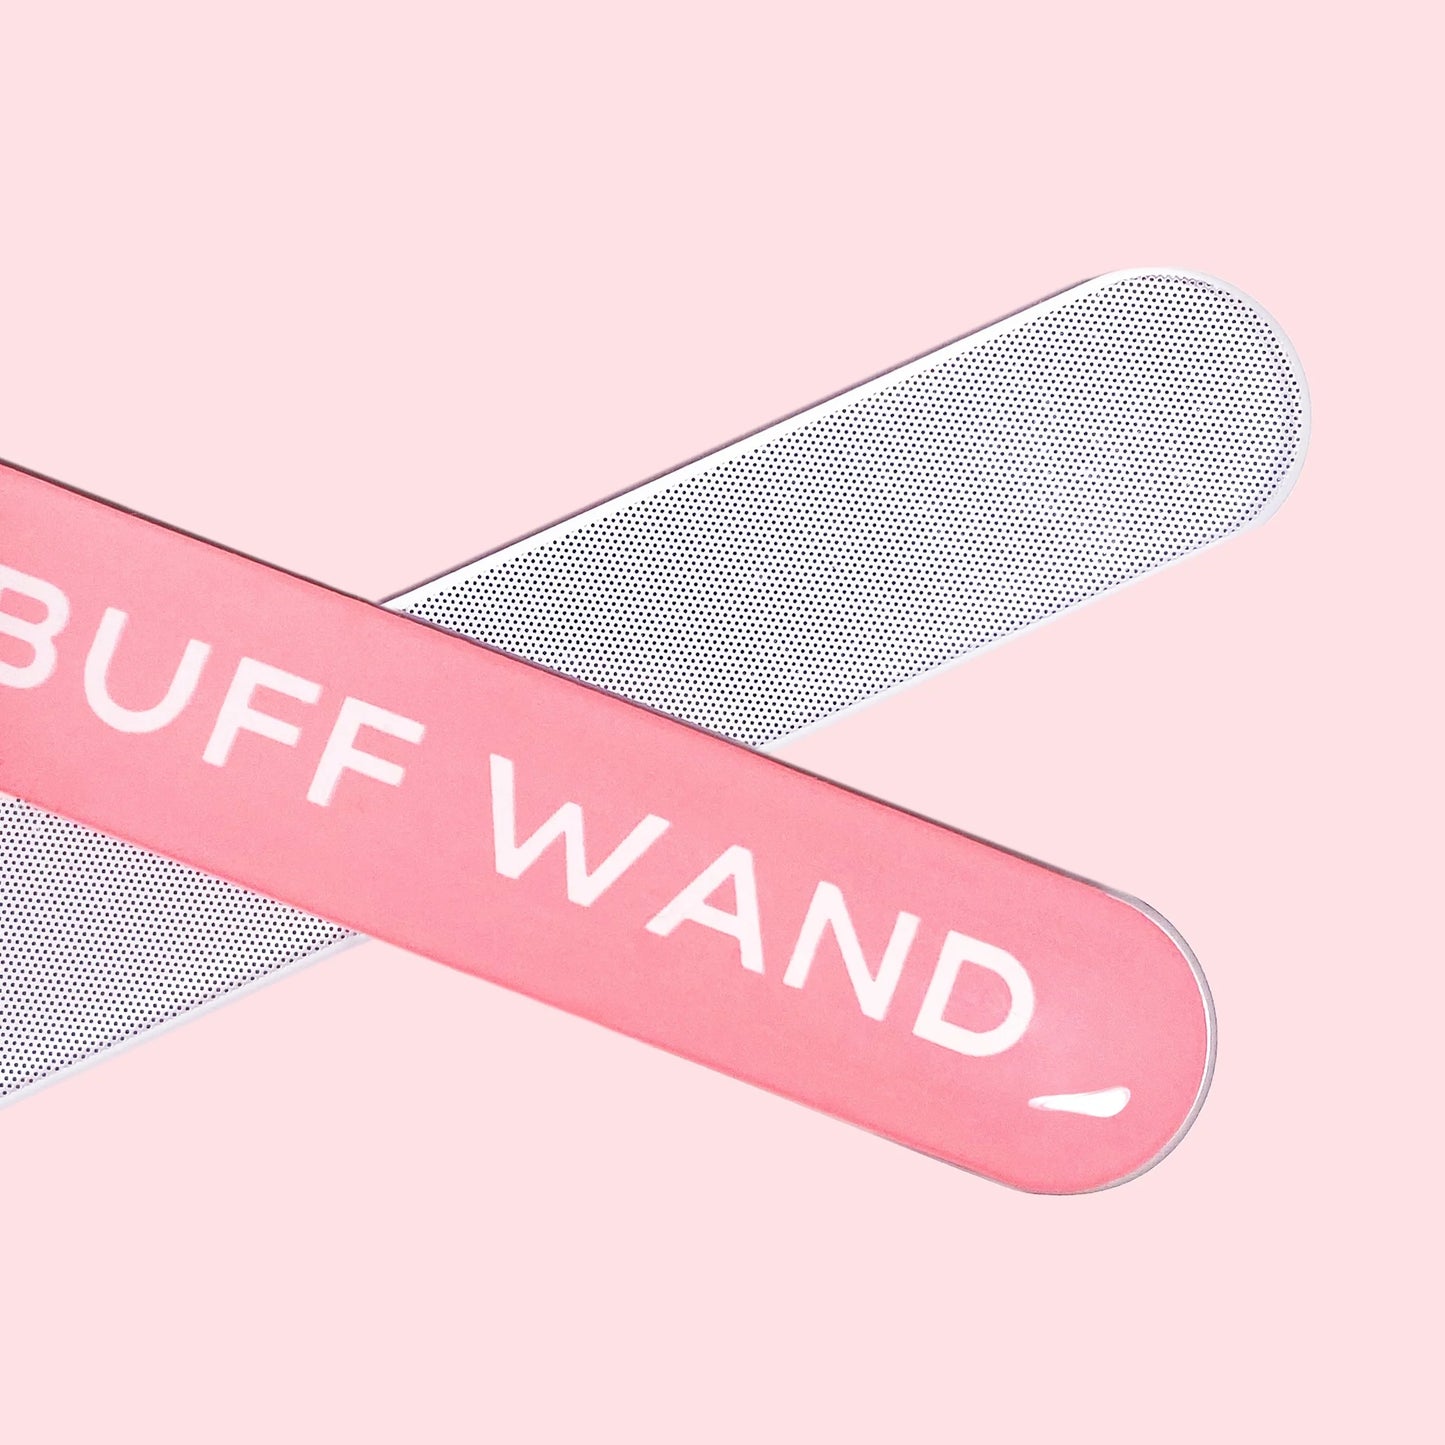 Buff Wand Nano Glass Manicure Nail File